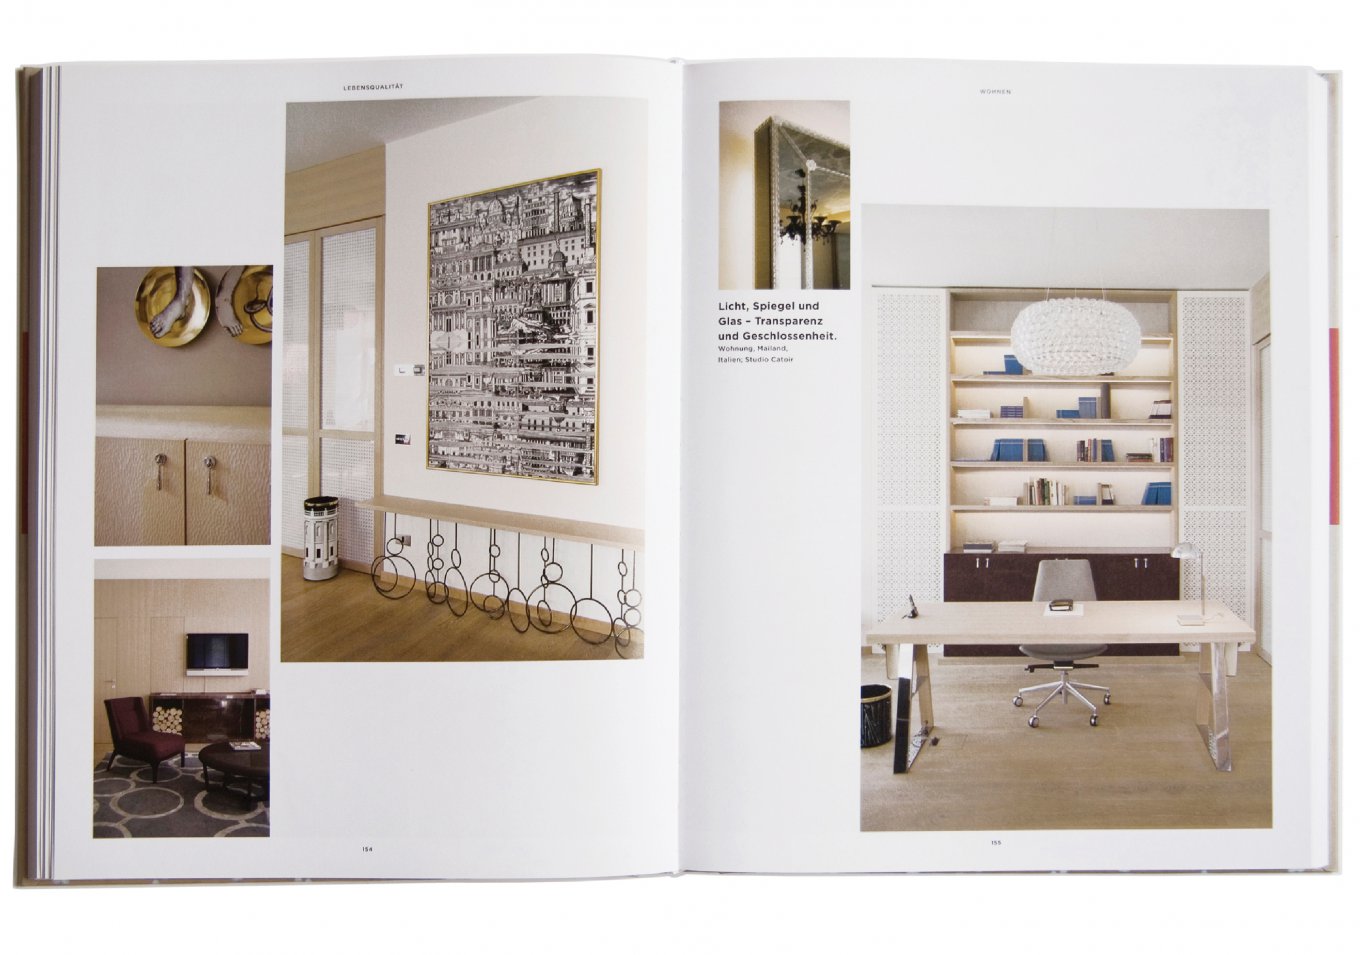 studio catoir designing interior architecture 3